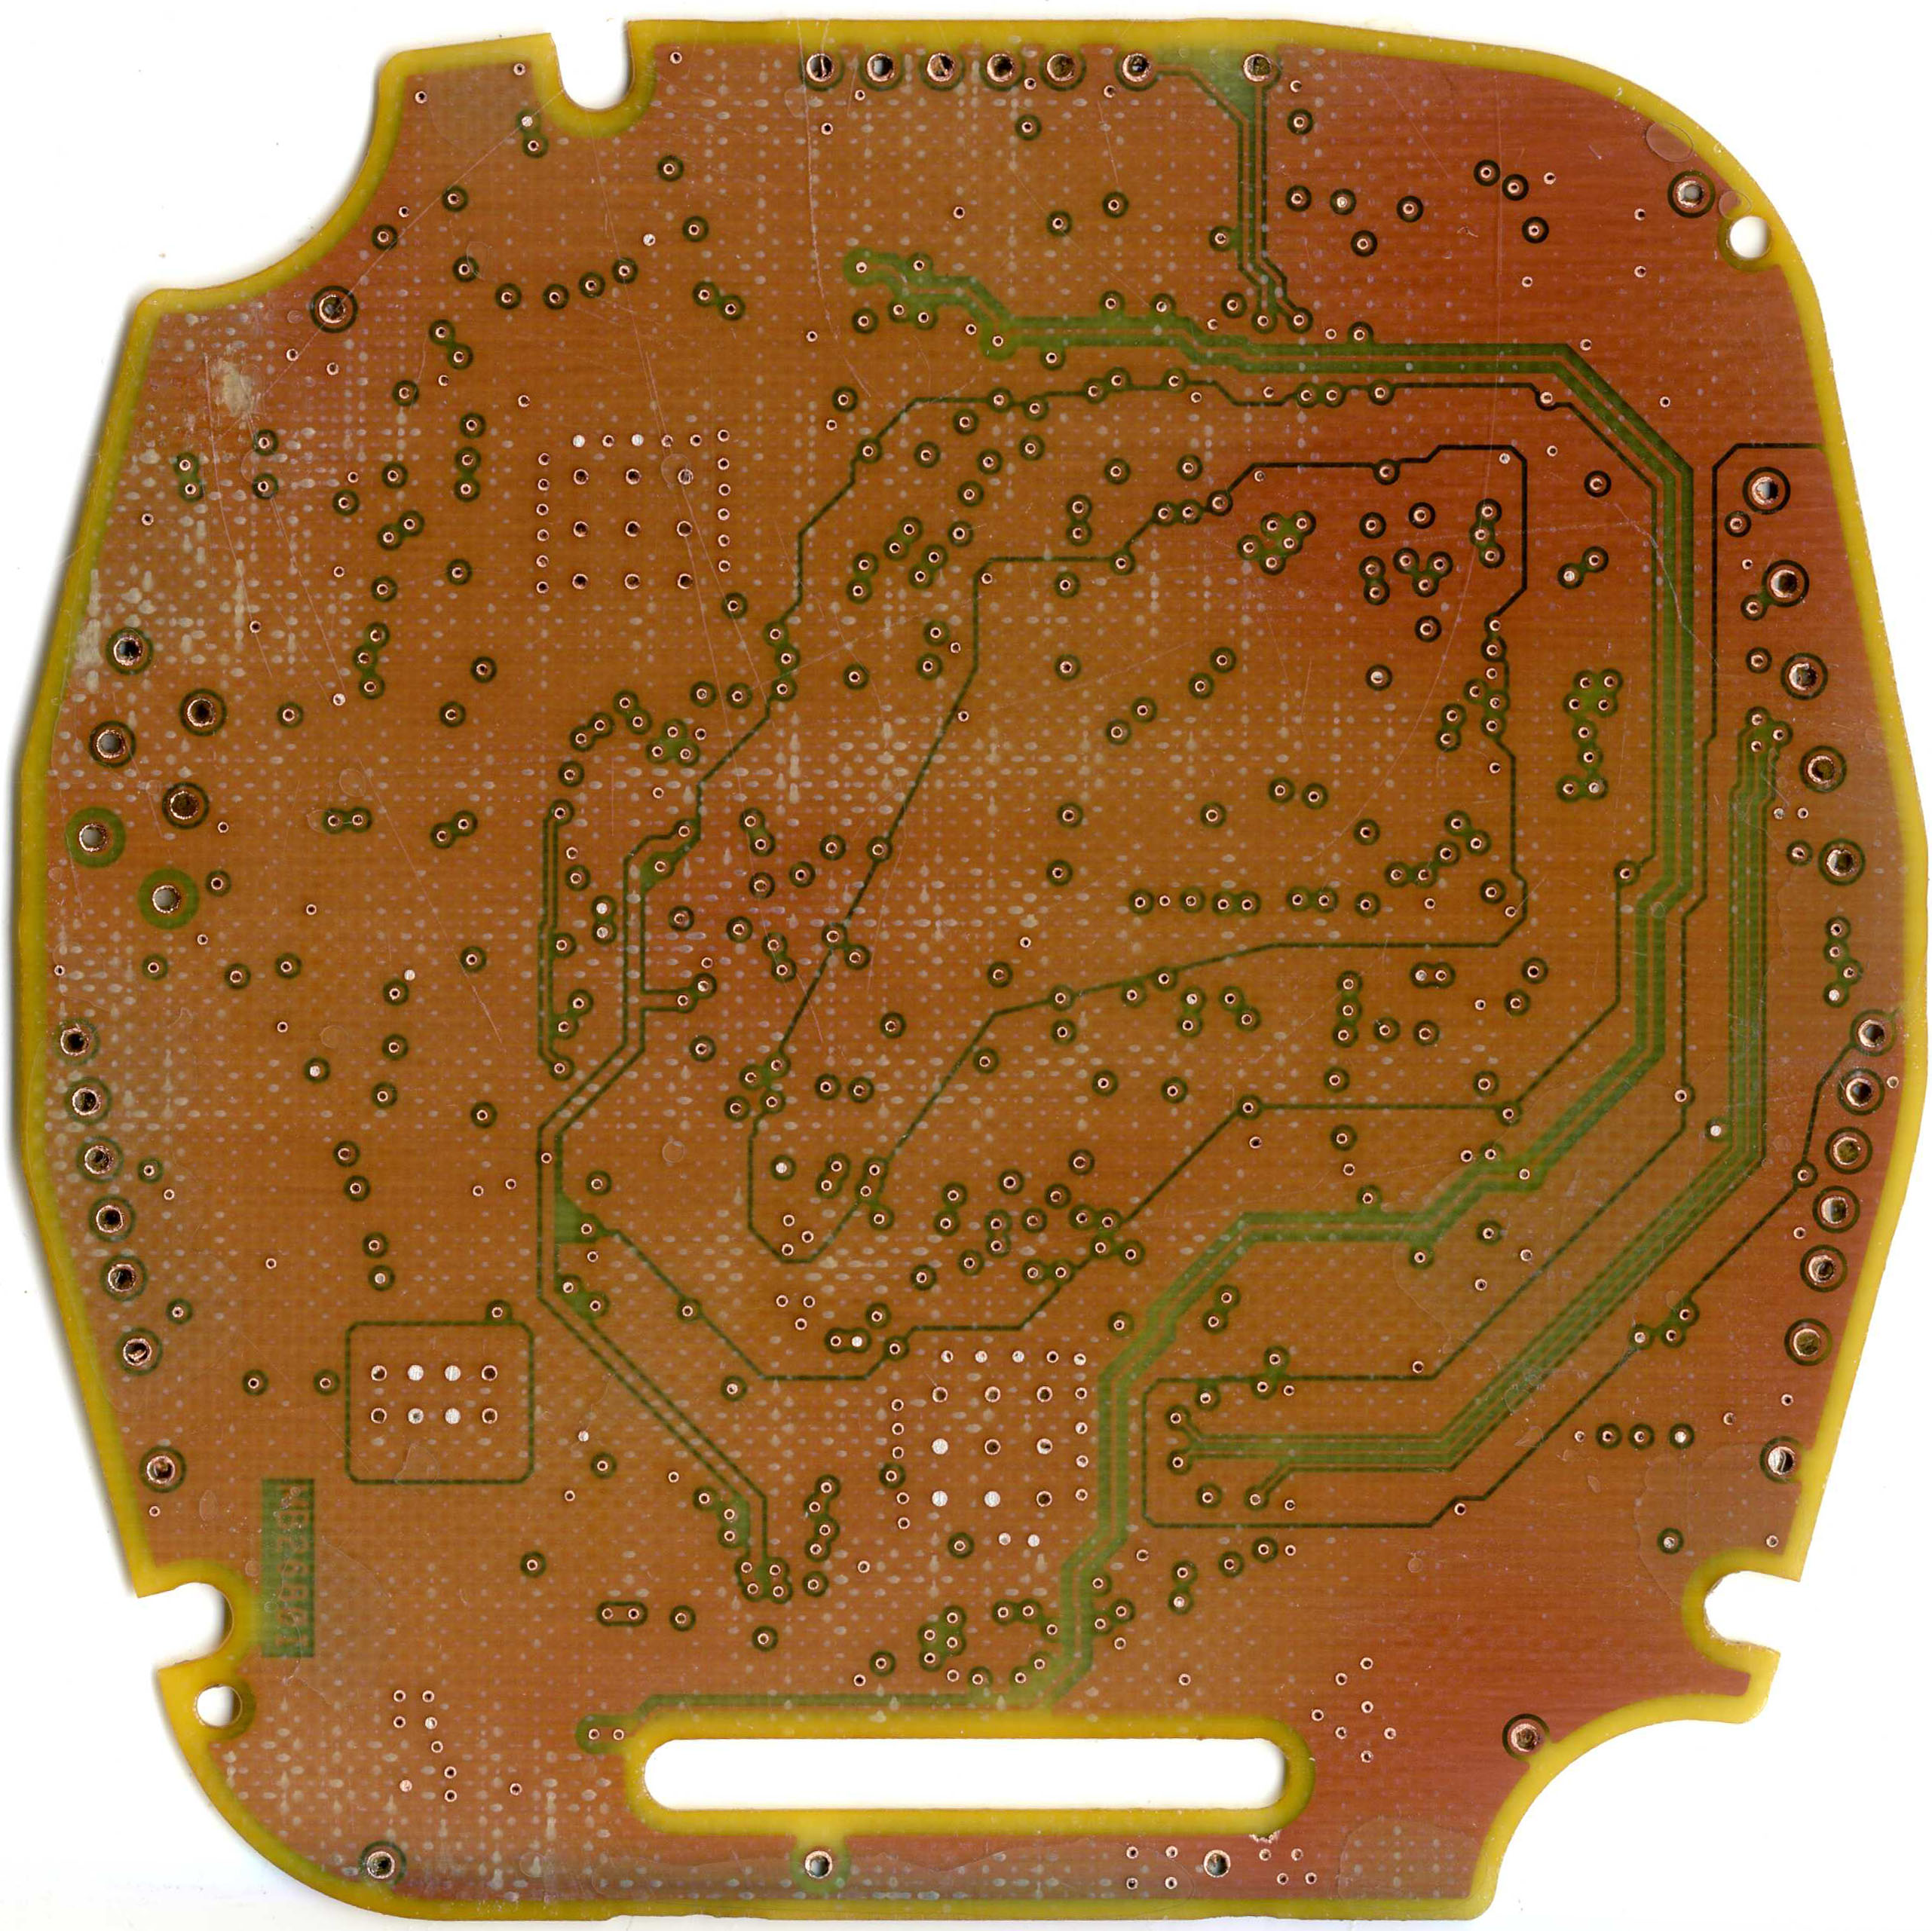 长春电路板复制 光学镜头设计 印刷电路板生产多层板